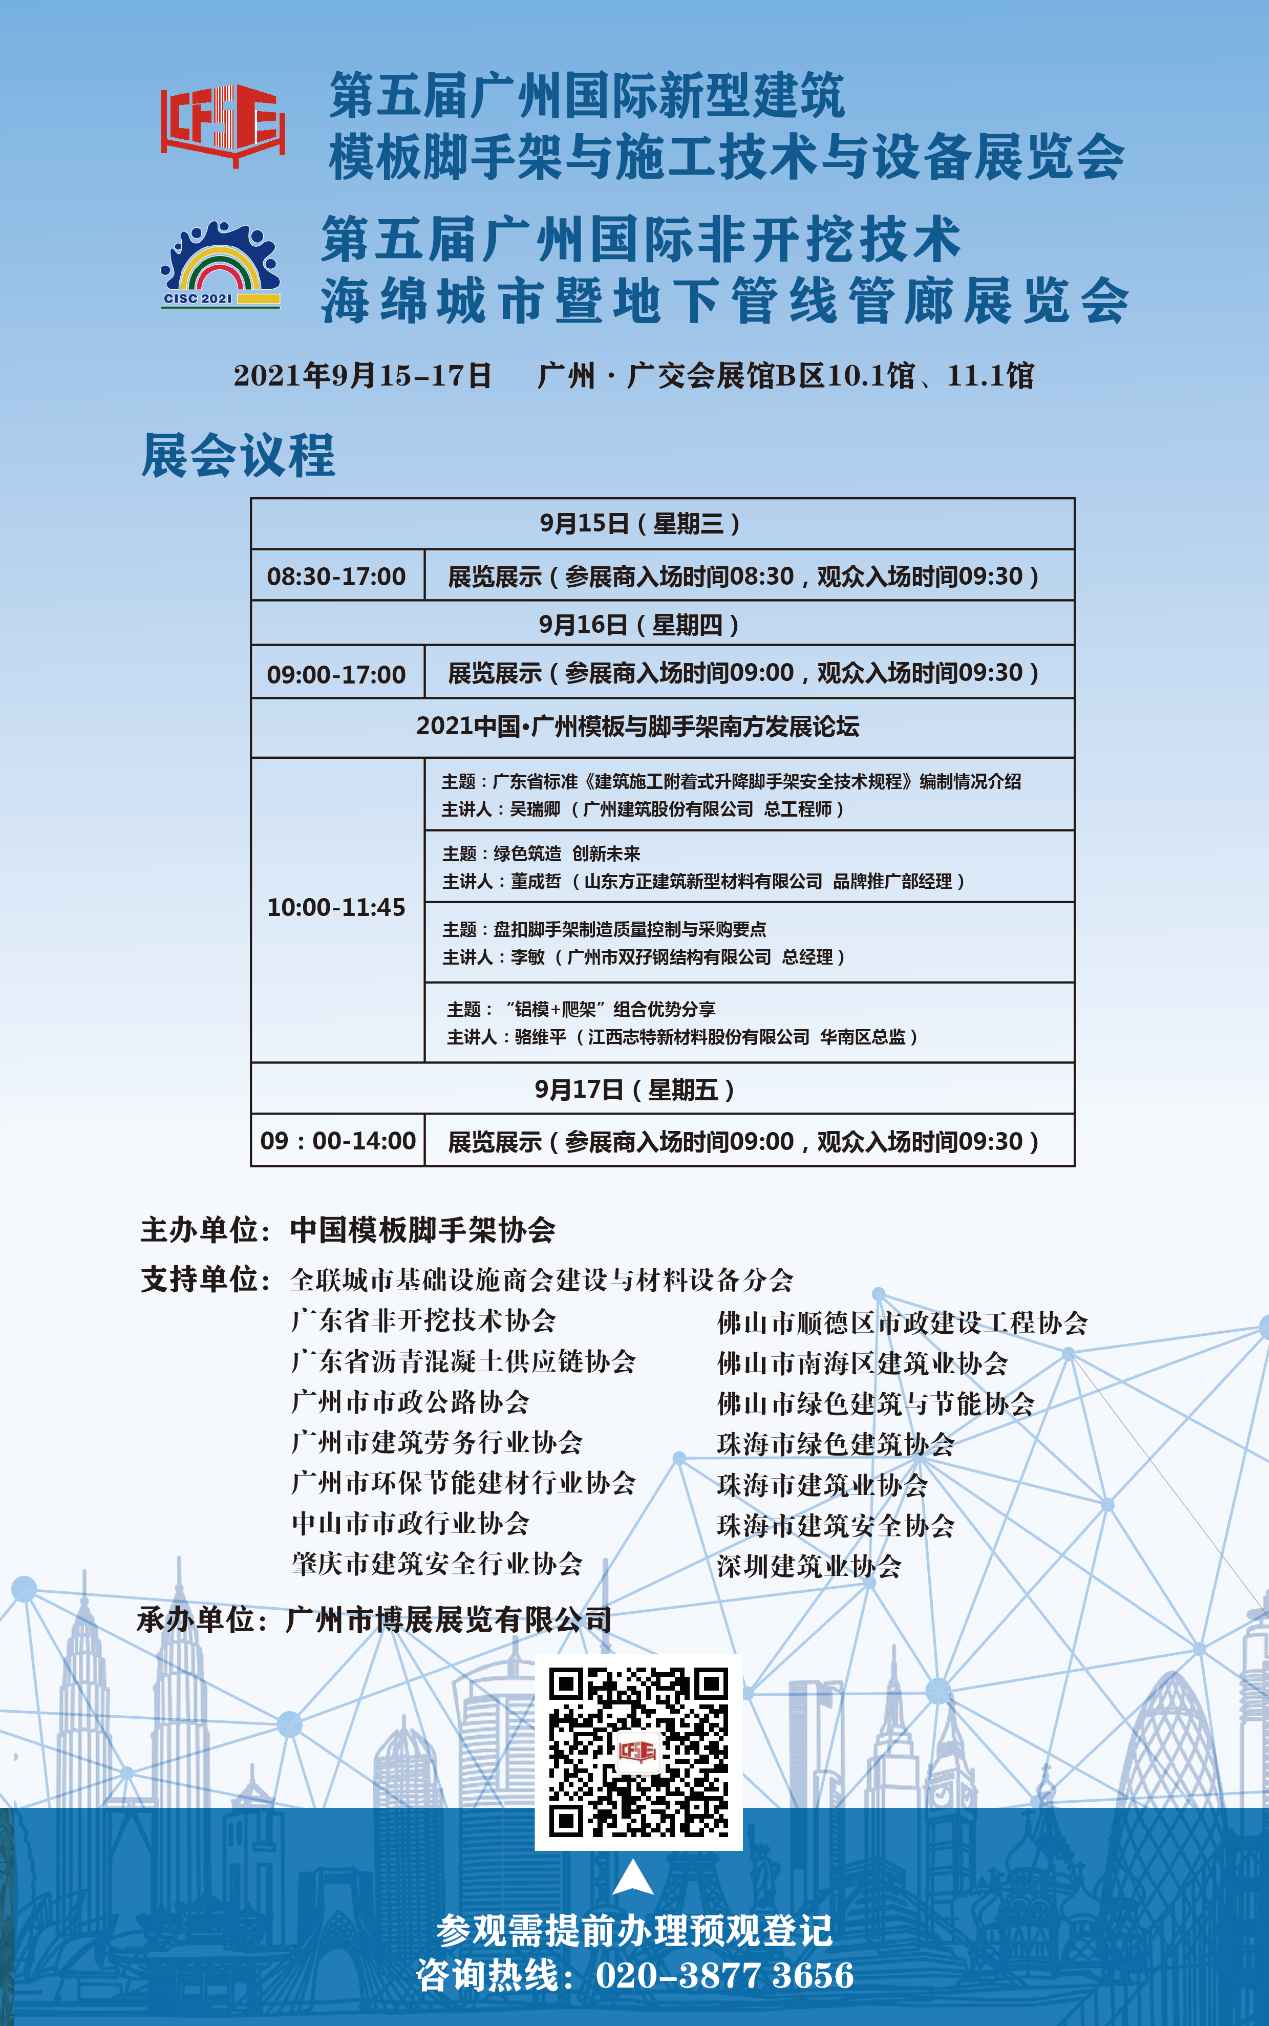 广州国际新型建筑模板脚手架展览会9月羊城开幕